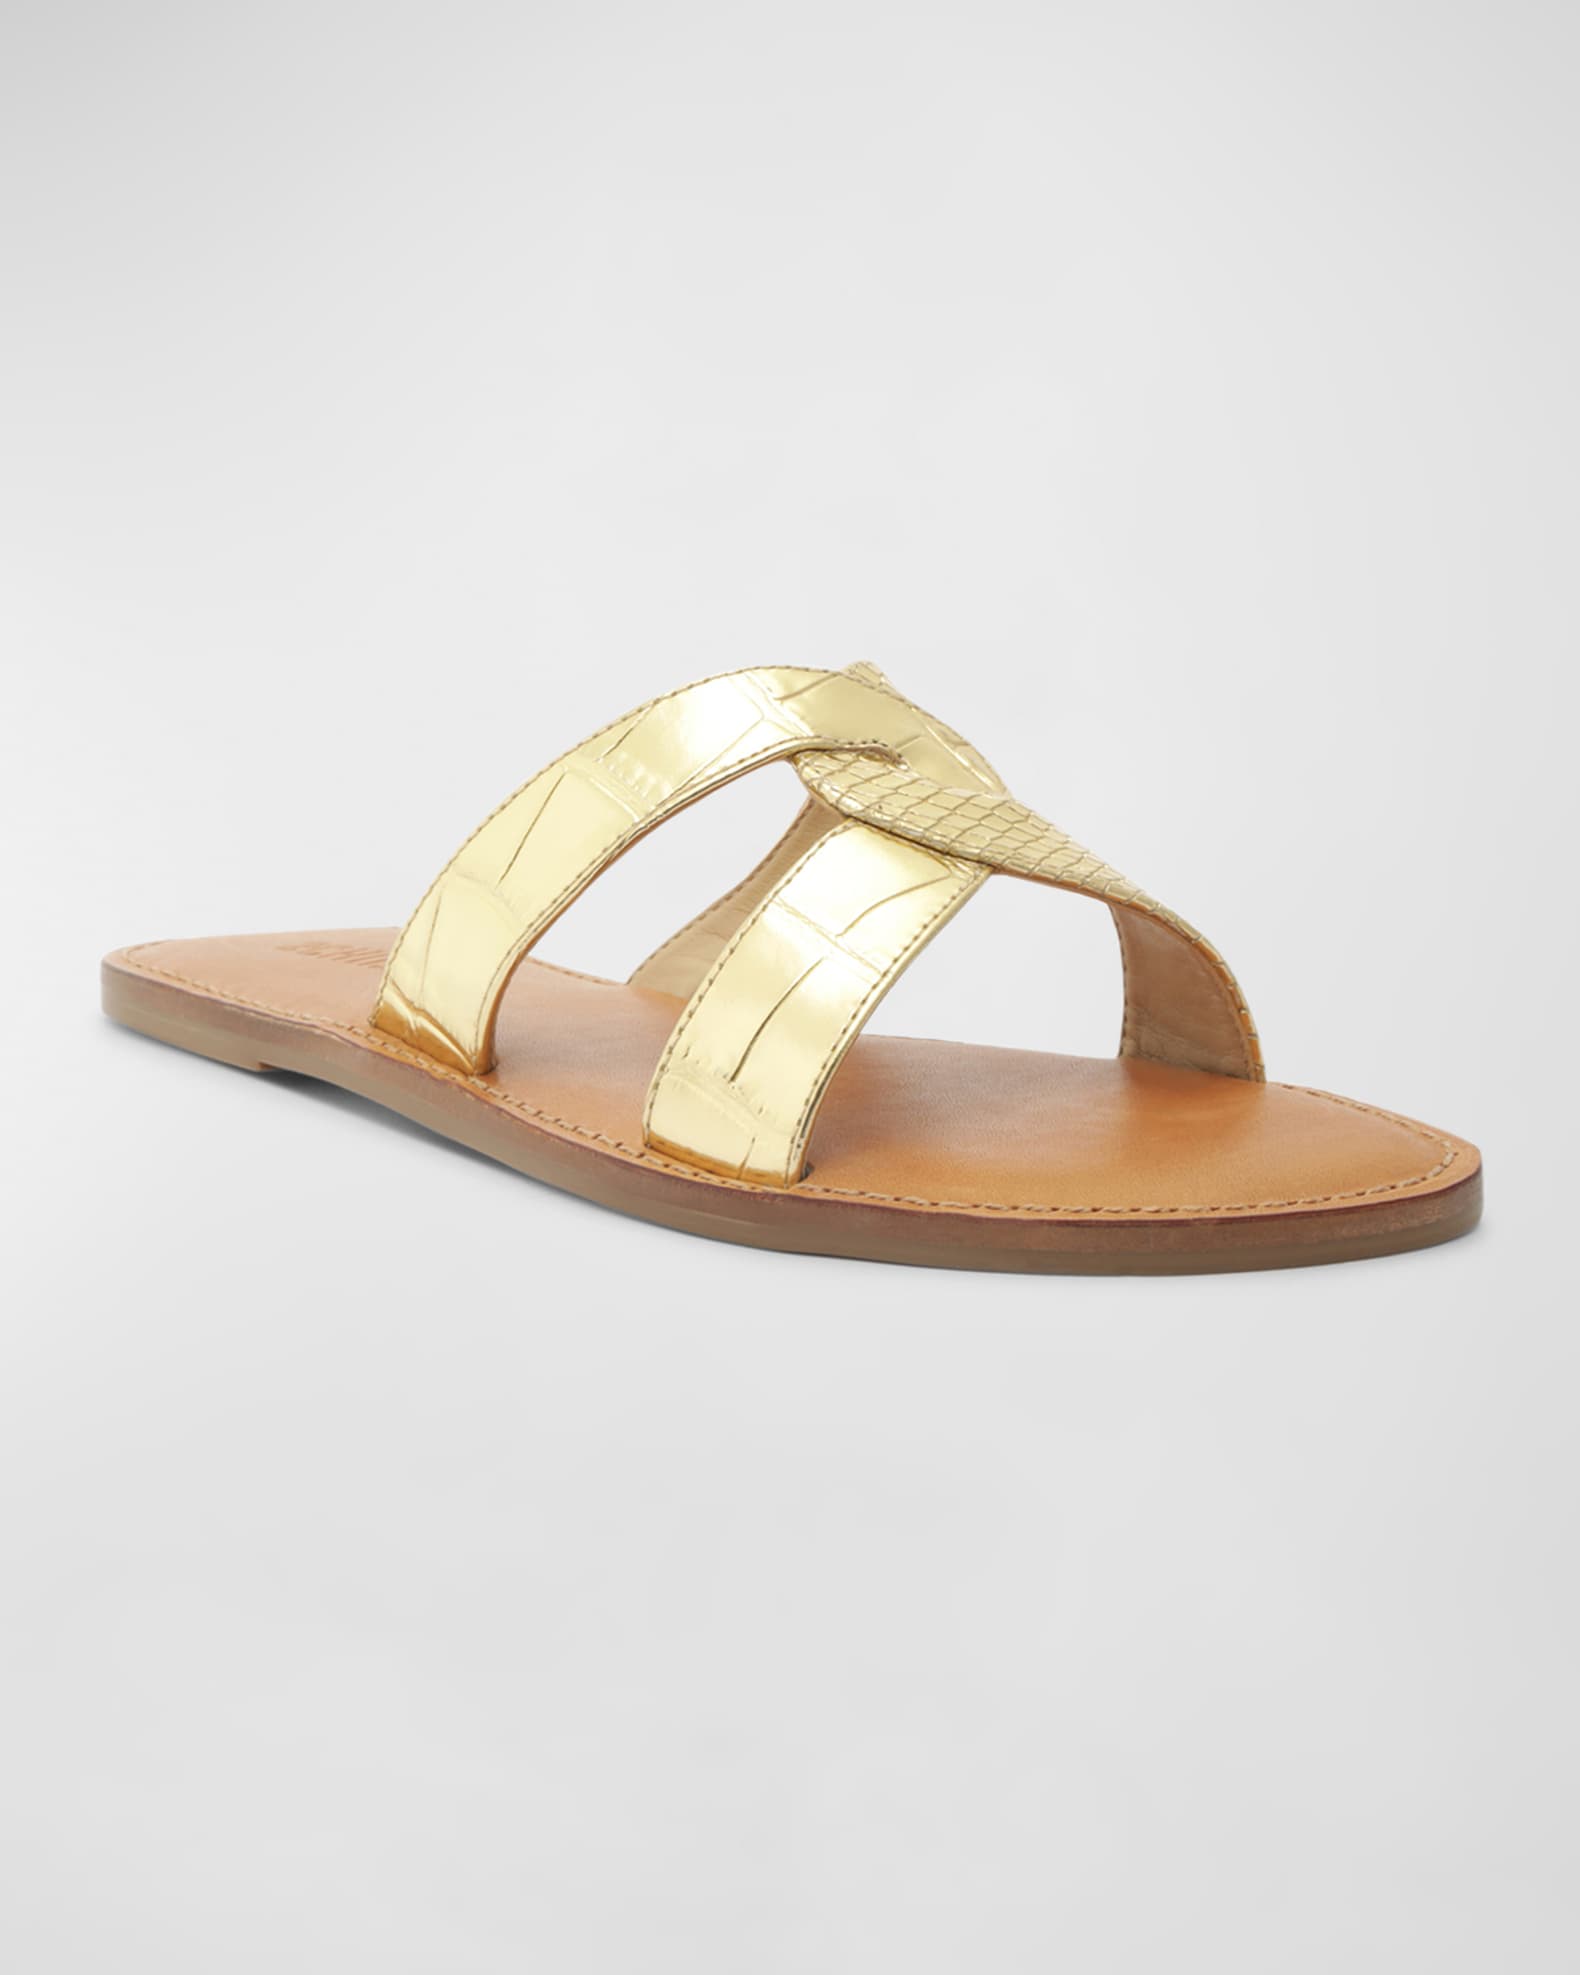 Schutz Rita Embossed Metallic Flat Sandals | Neiman Marcus